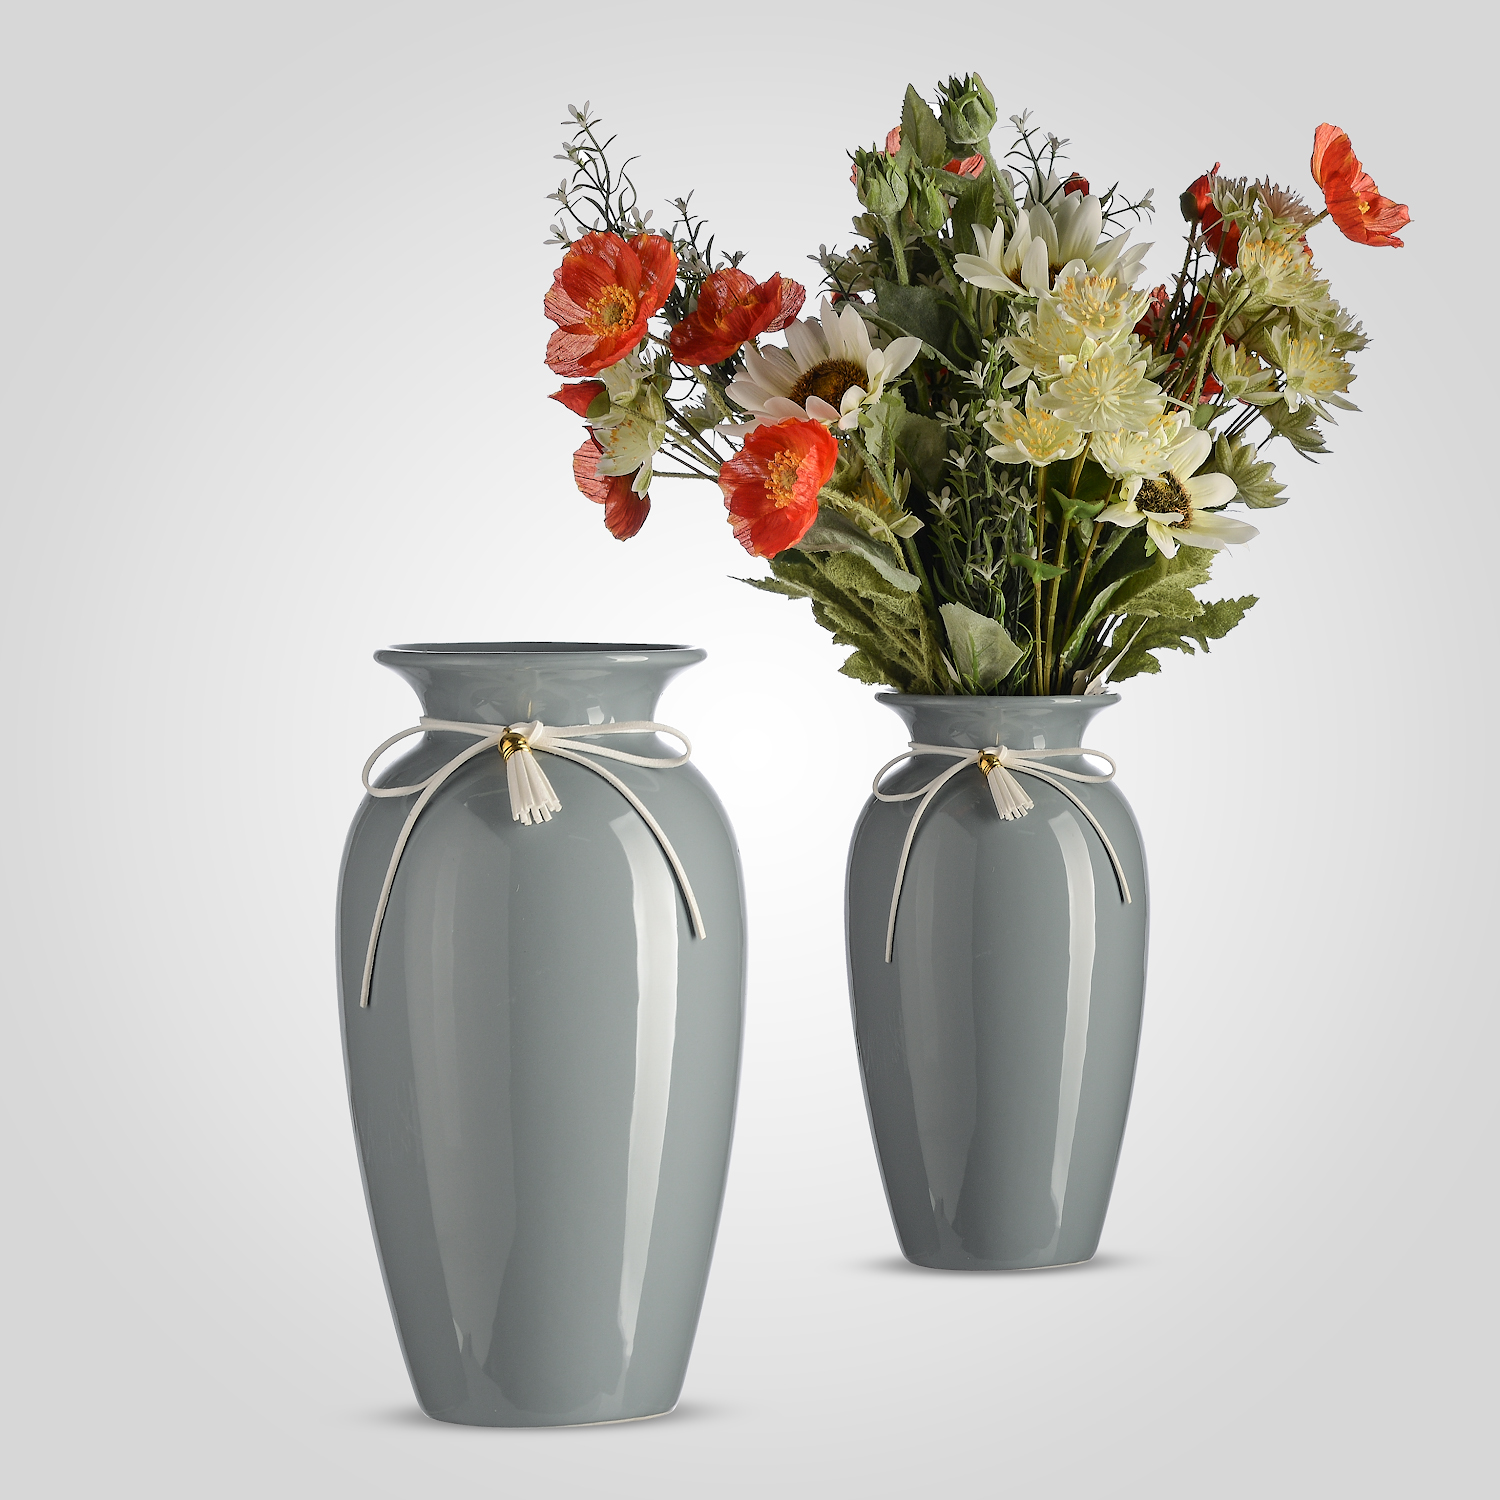 Две новые вазы